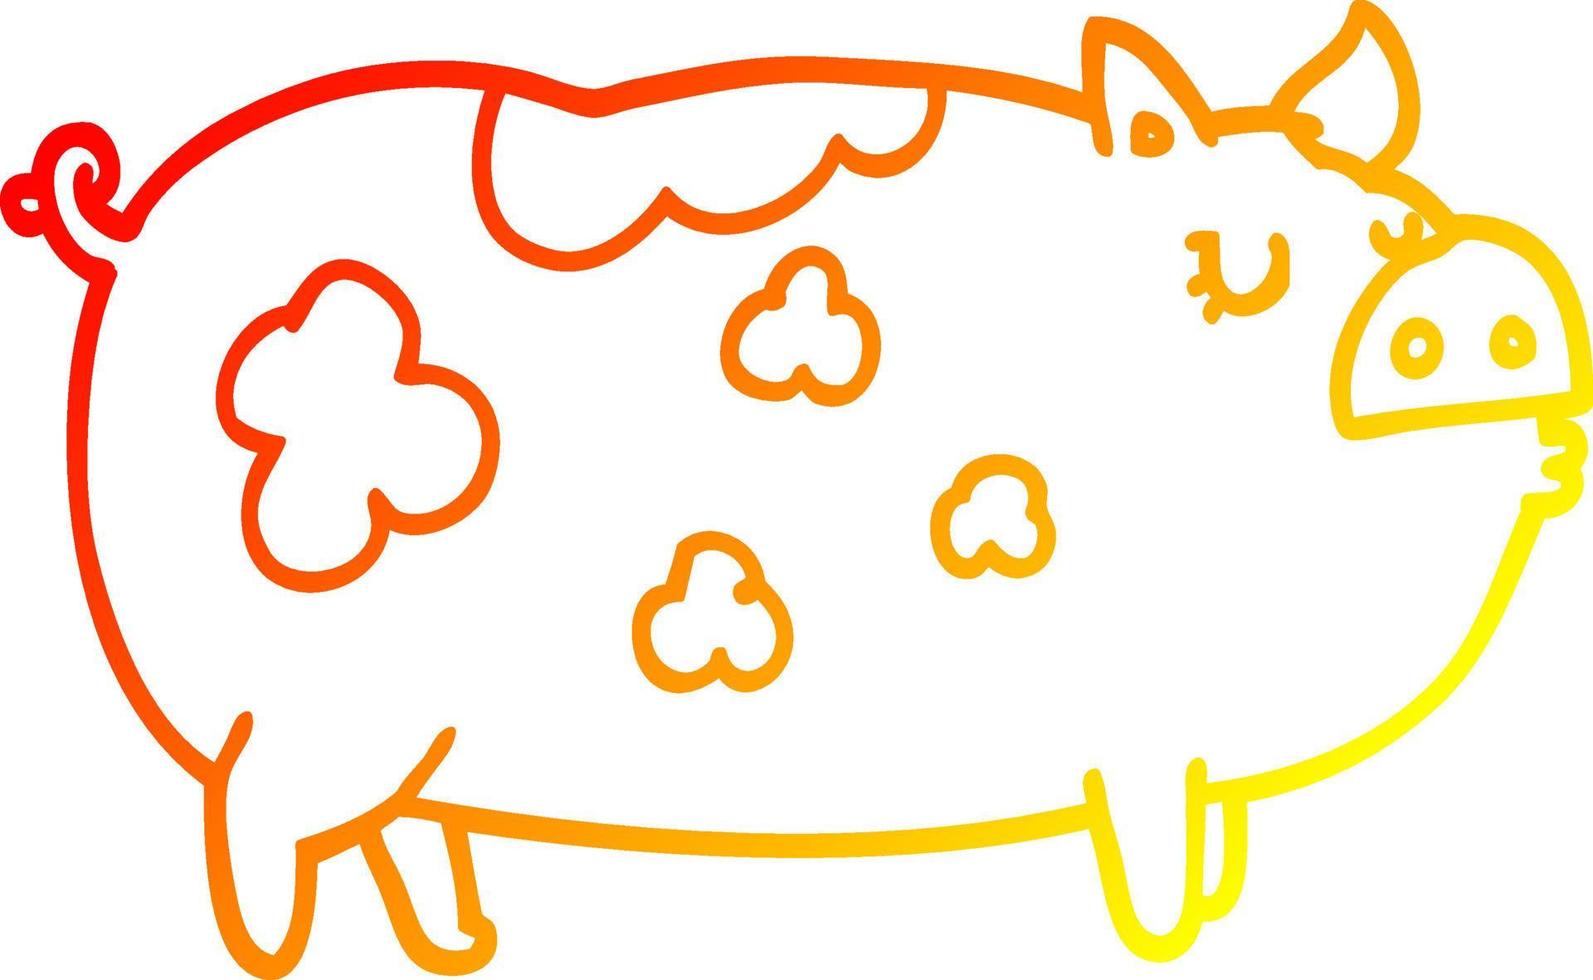 warme Gradientenlinie Zeichnung Cartoon-Schwein vektor